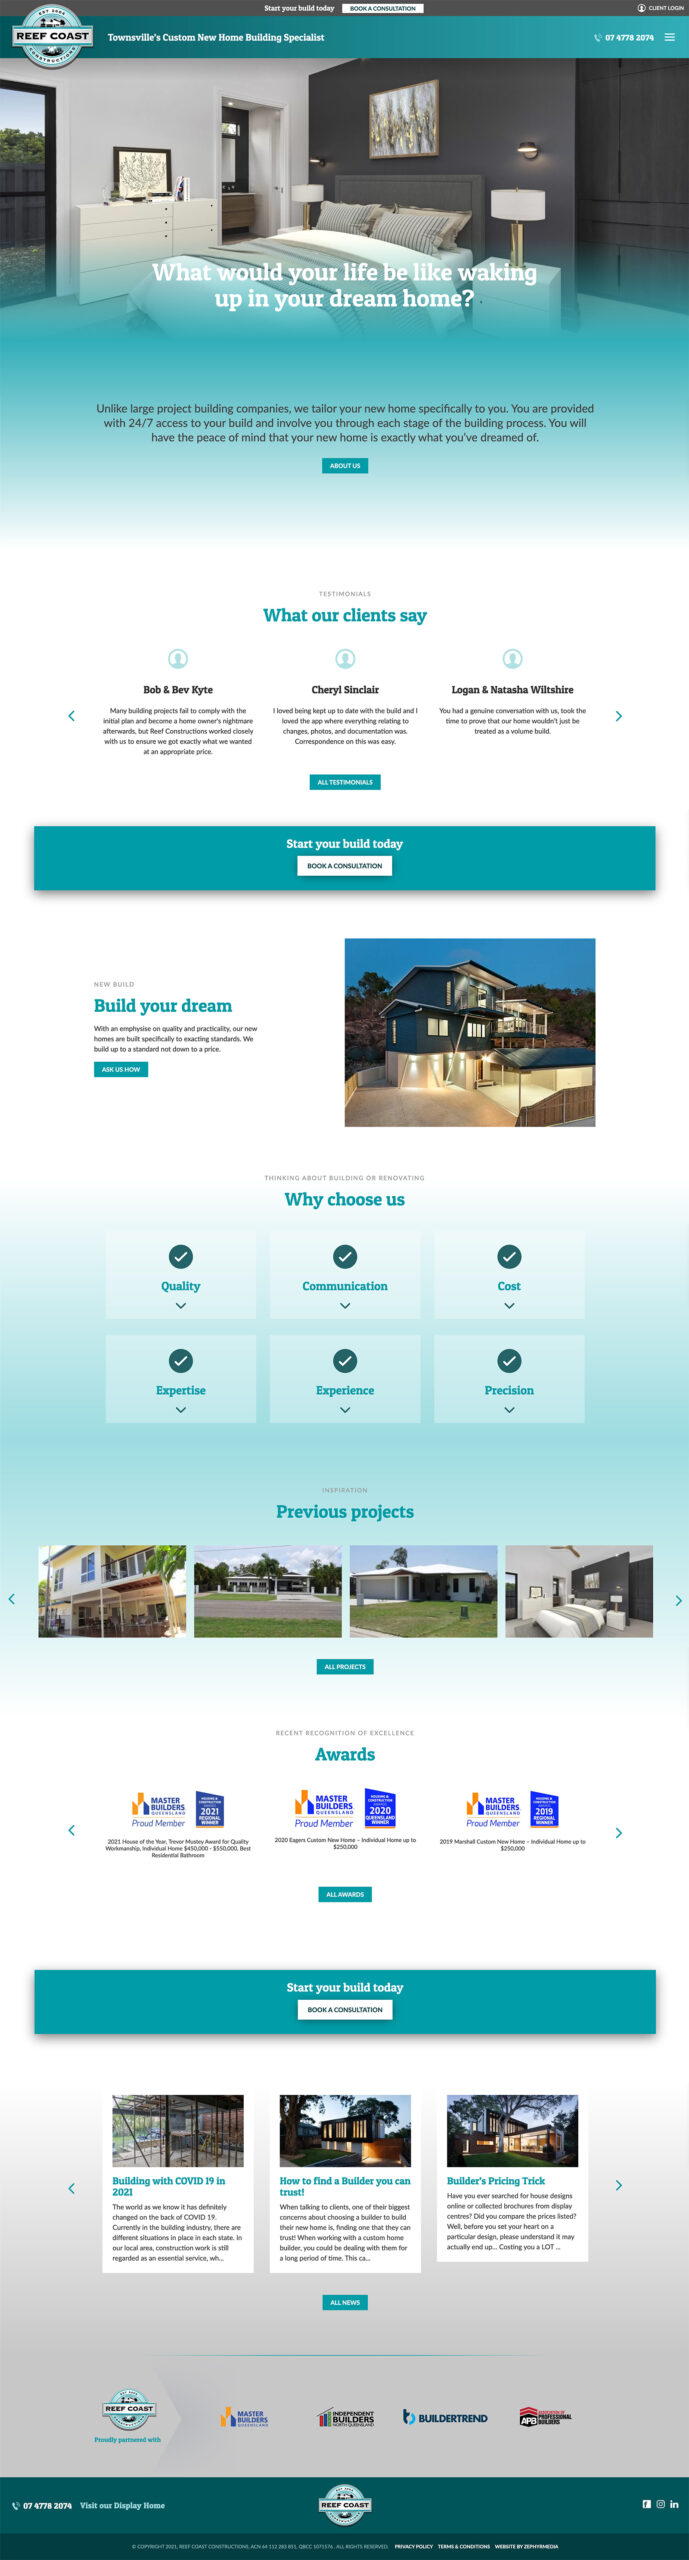 Website design by Zephyrmedia